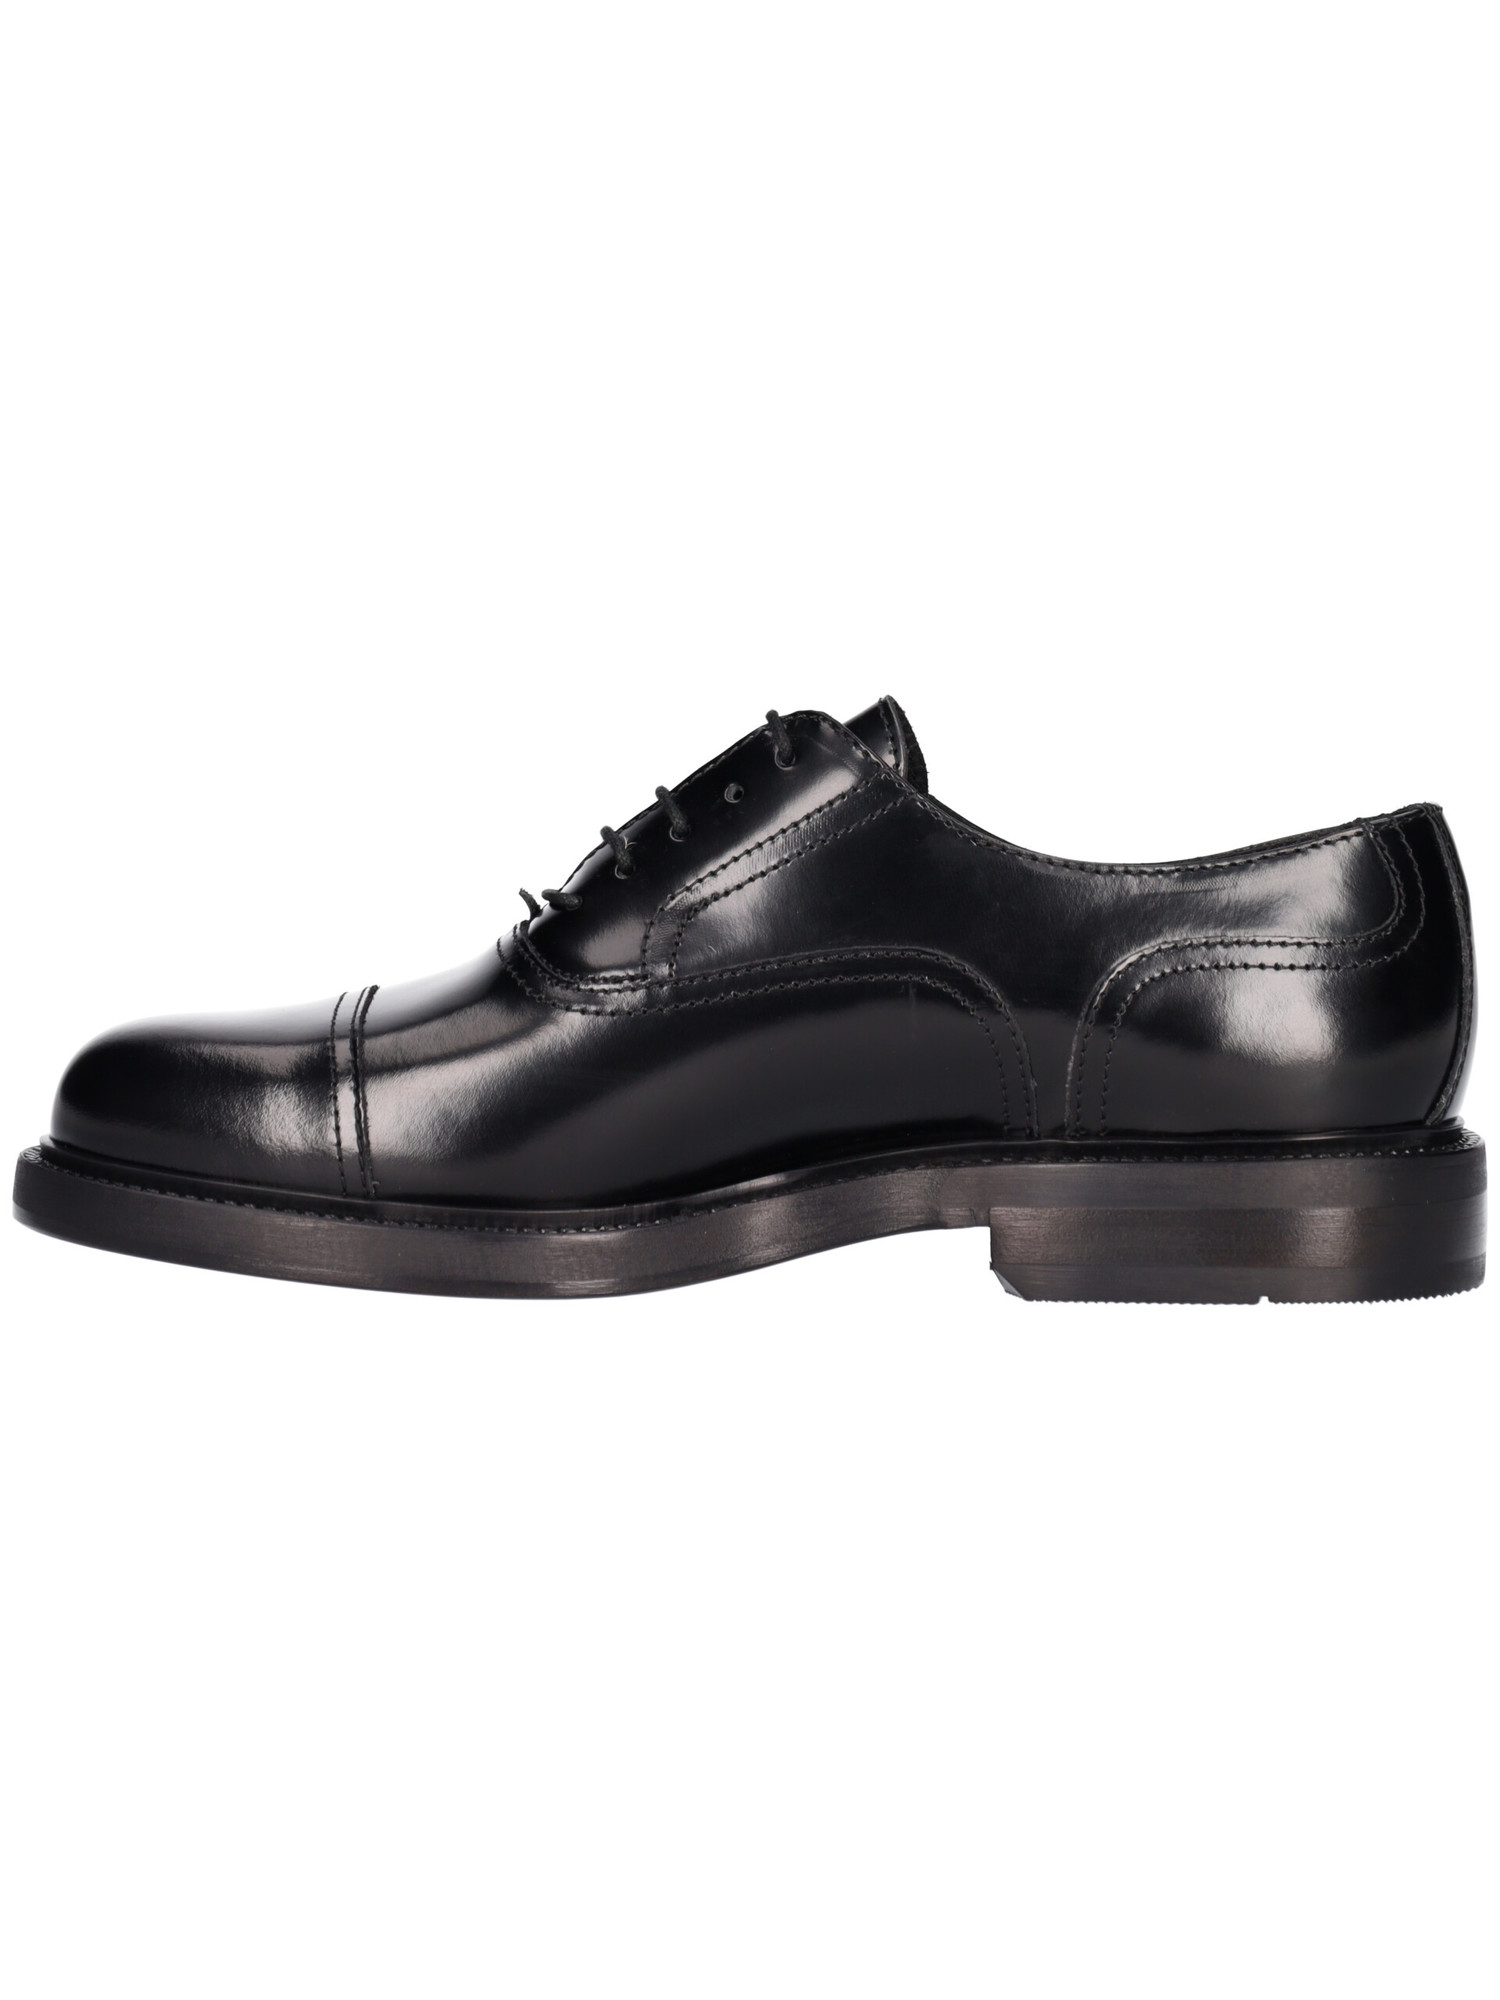 scarpa-elegante-antica-cuoieria-da-uomo-nera